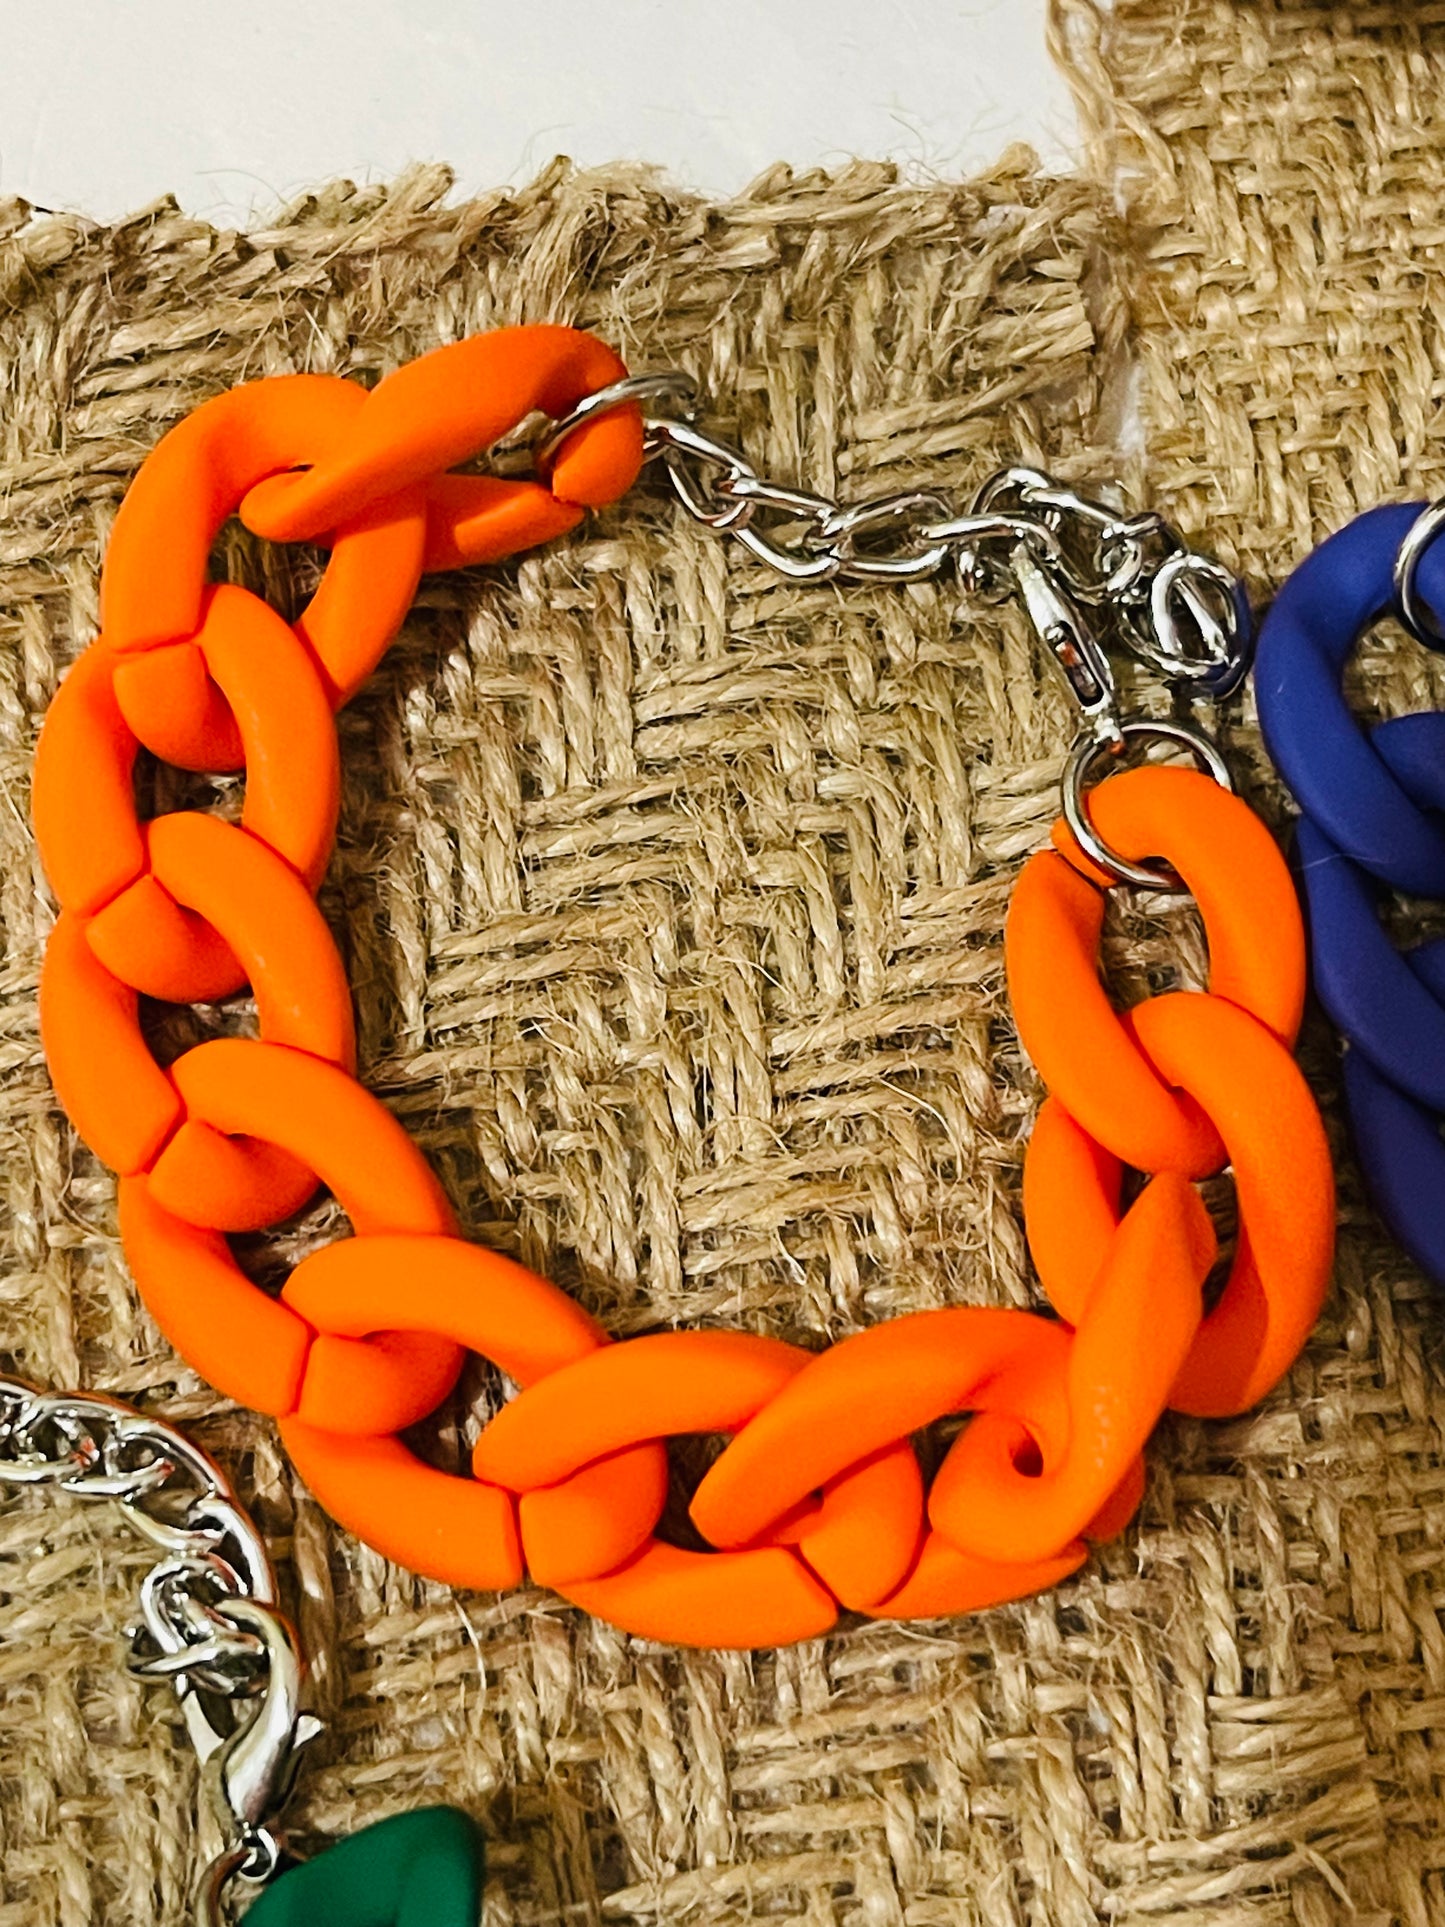 Fashion Chain Bracelet